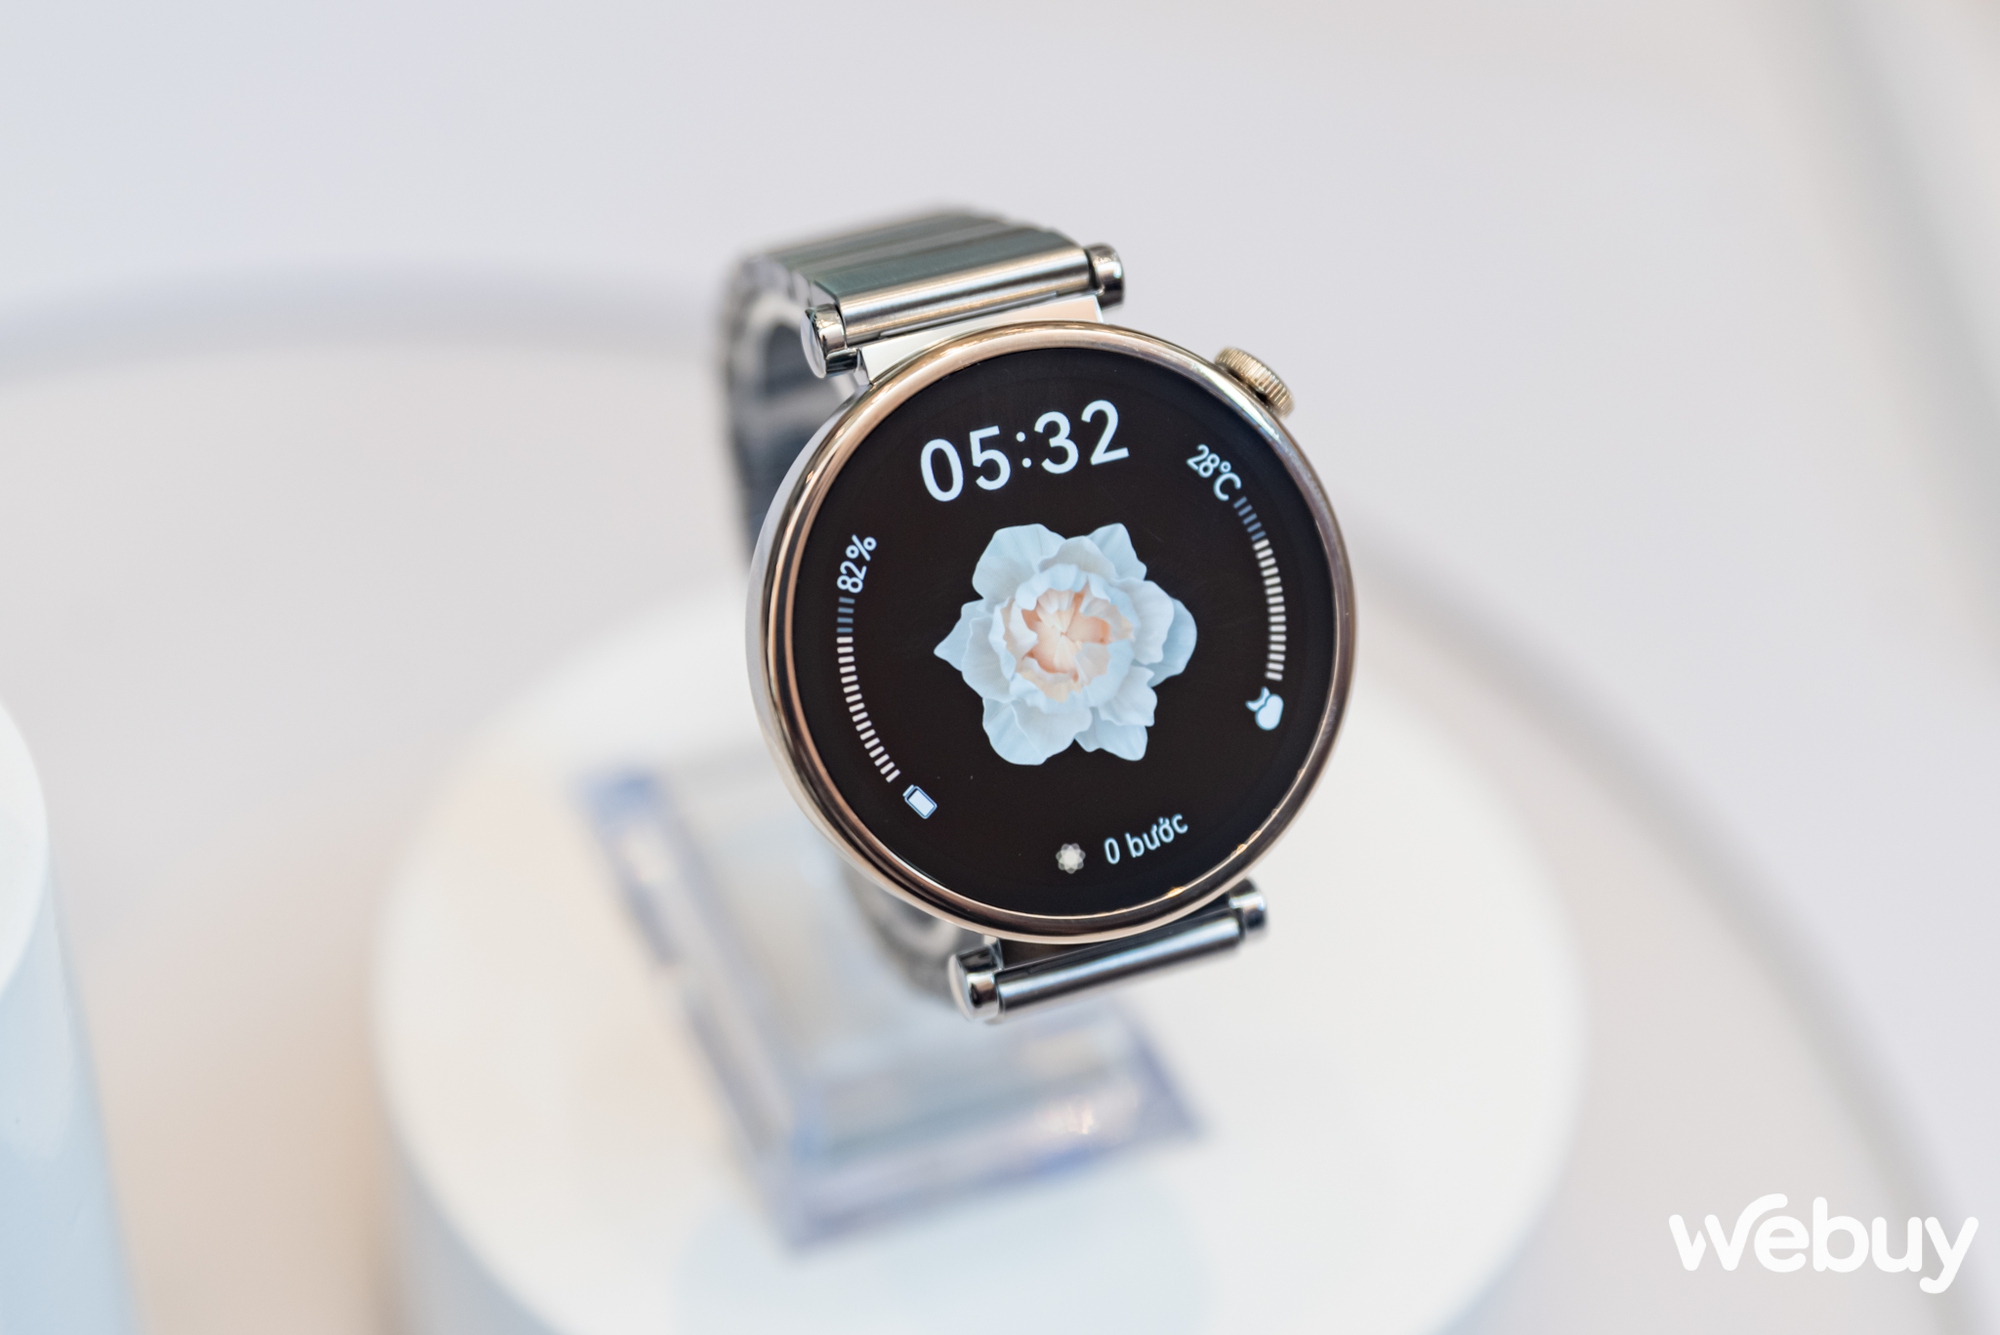 Huawei ra mắt Watch GT 4: Thiết kế đa phong cách, nhiều cải tiến sức khoẻ lẫn thể thao, giá từ 6 triệu đồng - Ảnh 6.